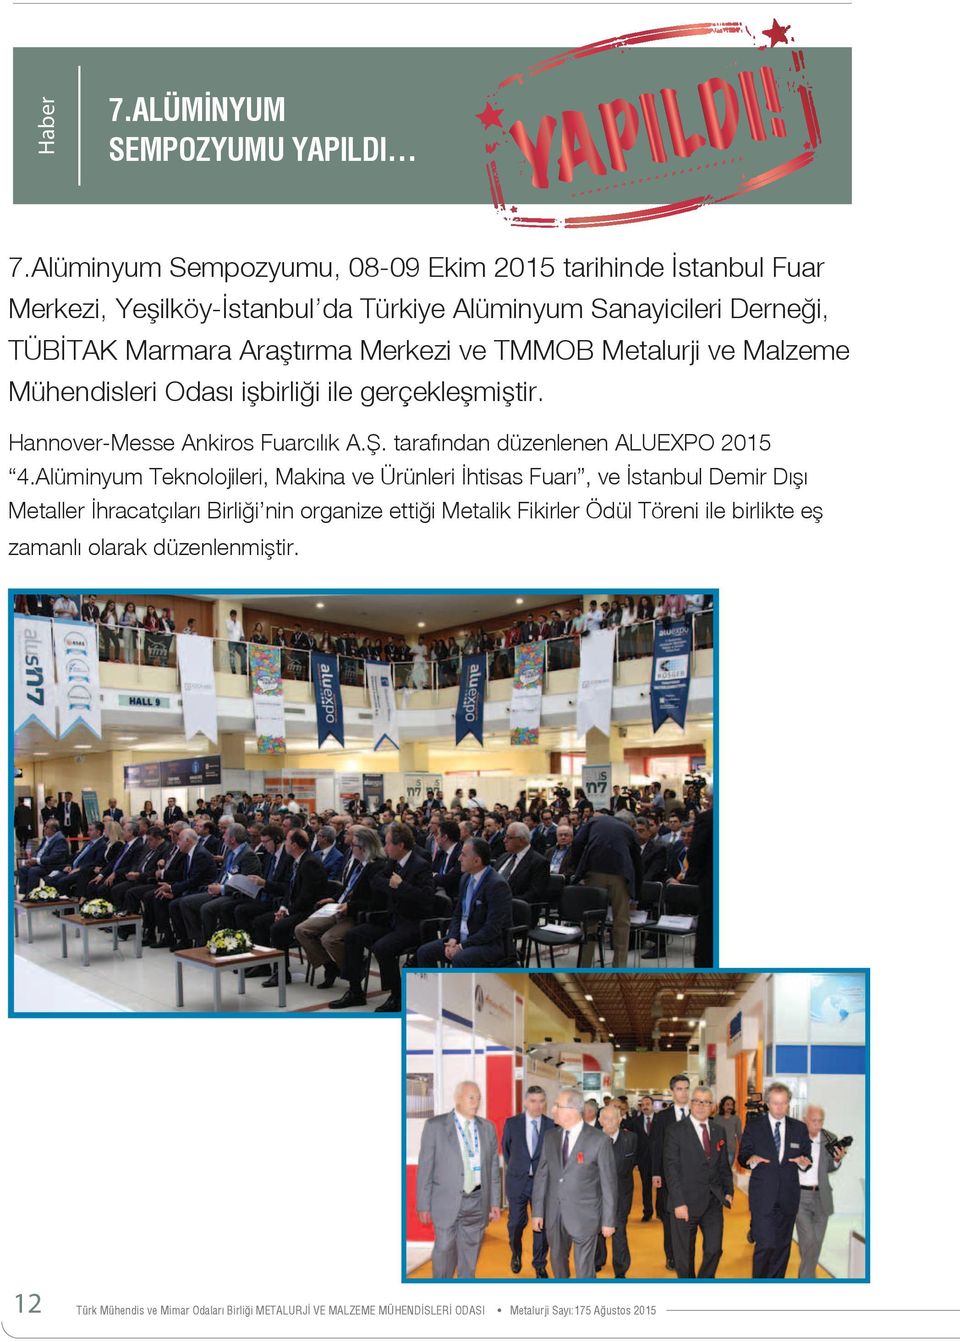 TMMOB Metalurji ve Malzeme Mühendisleri Odası işbirliği ile gerçekleşmiştir. Hannover-Messe Ankiros Fuarcılık A.Ş. tarafından düzenlenen ALUEXPO 2015 4.